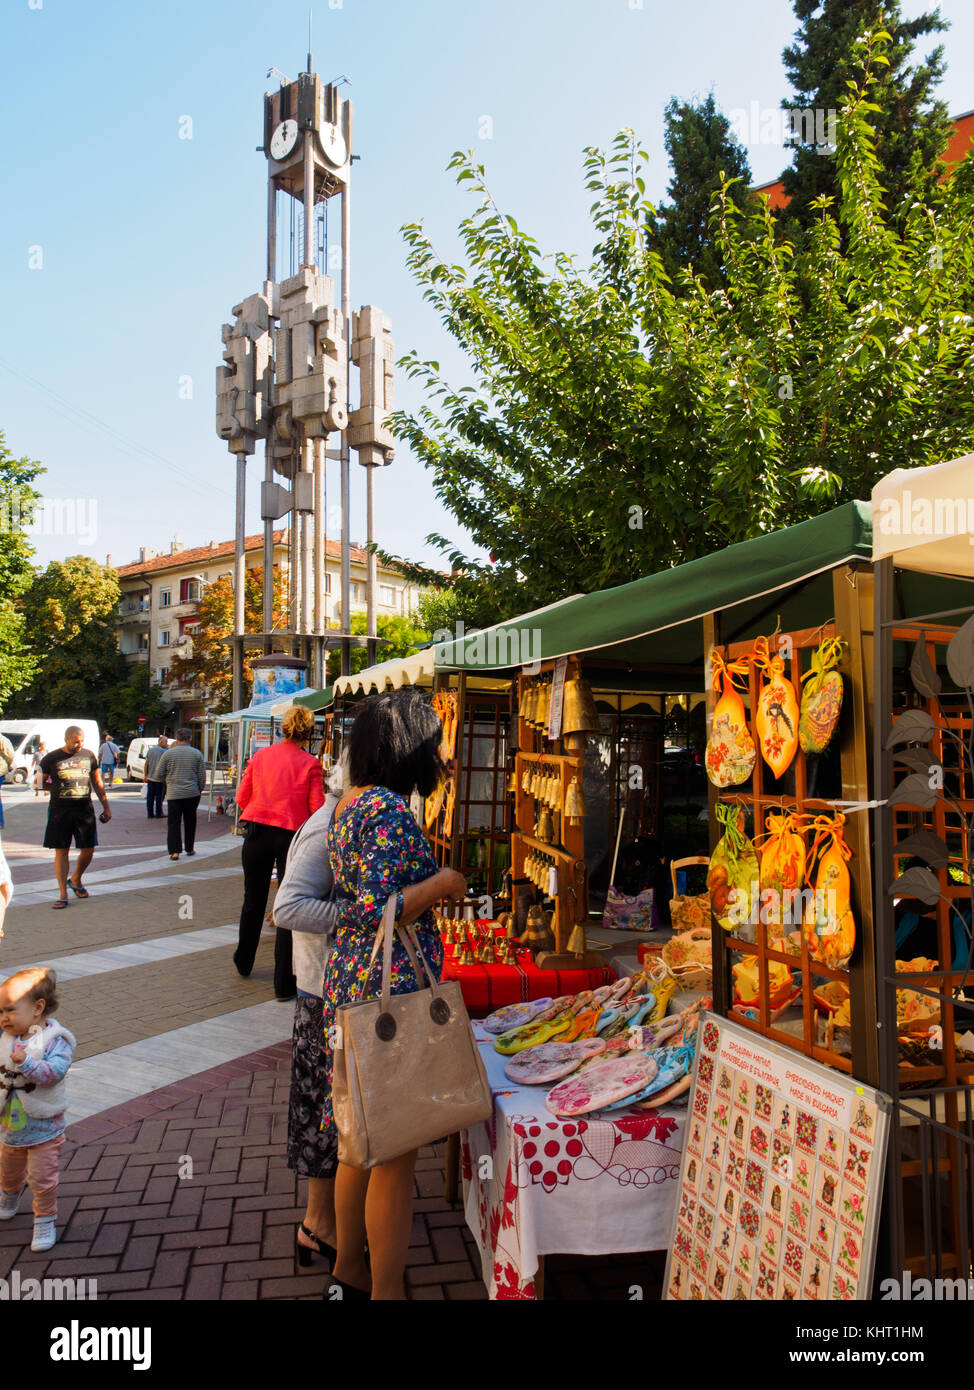 Il mercato delle pulci a Haskovo fair avente il vecchio orologio meccanico a torre in background. Foto Stock